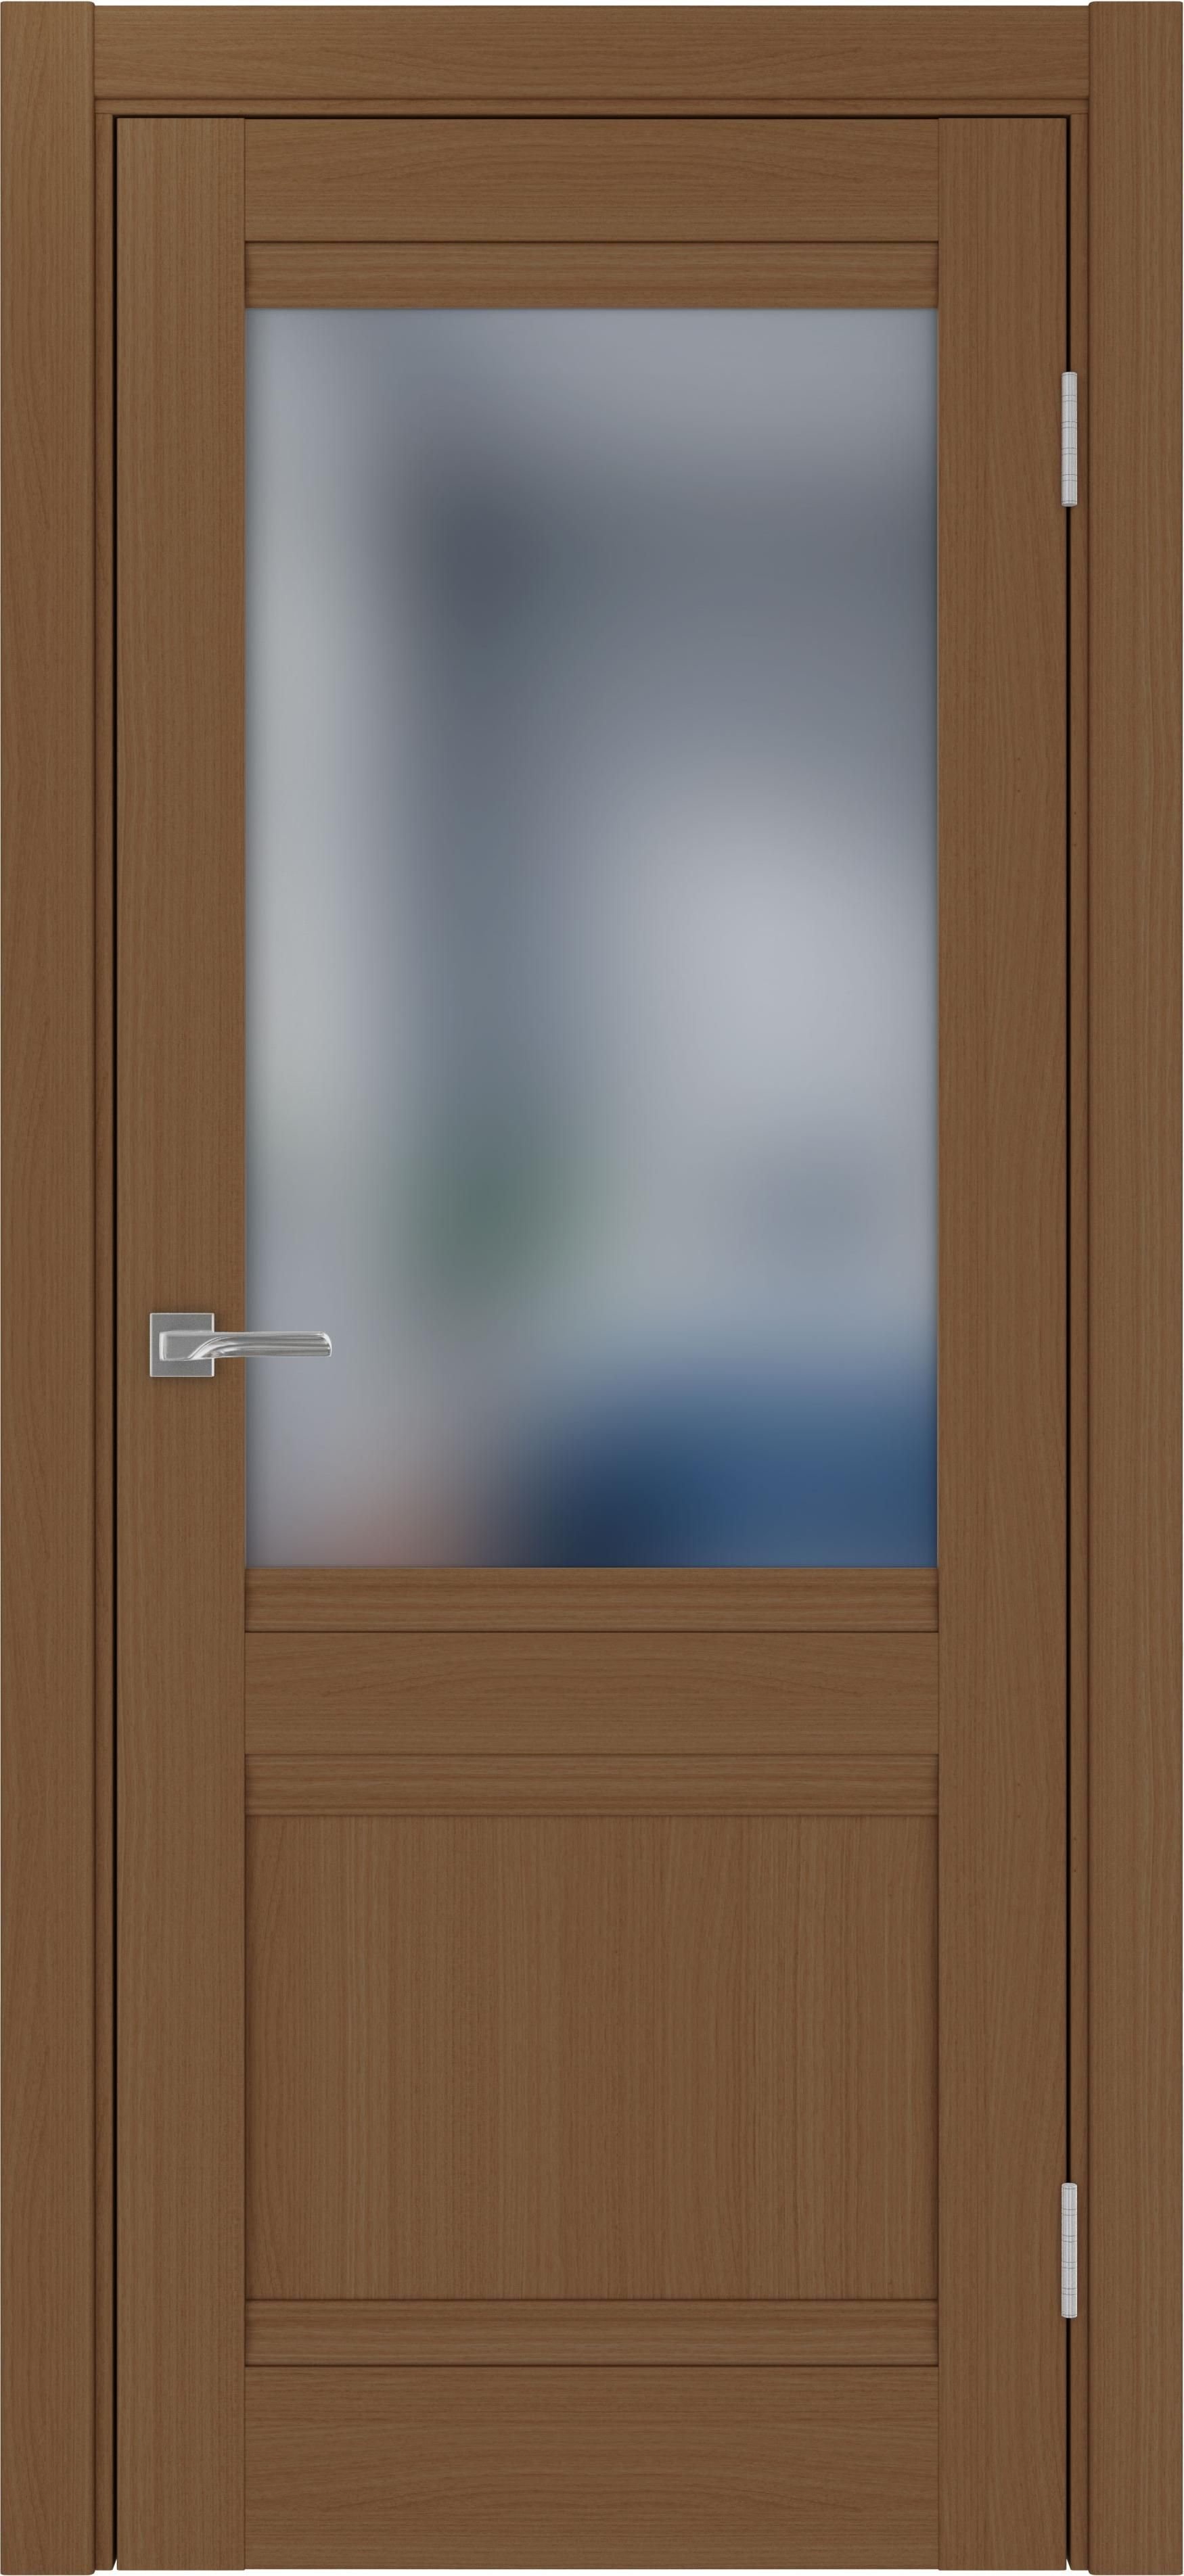 Межкомнатная дверь «Турин 502U.21 Орех» стекло сатин